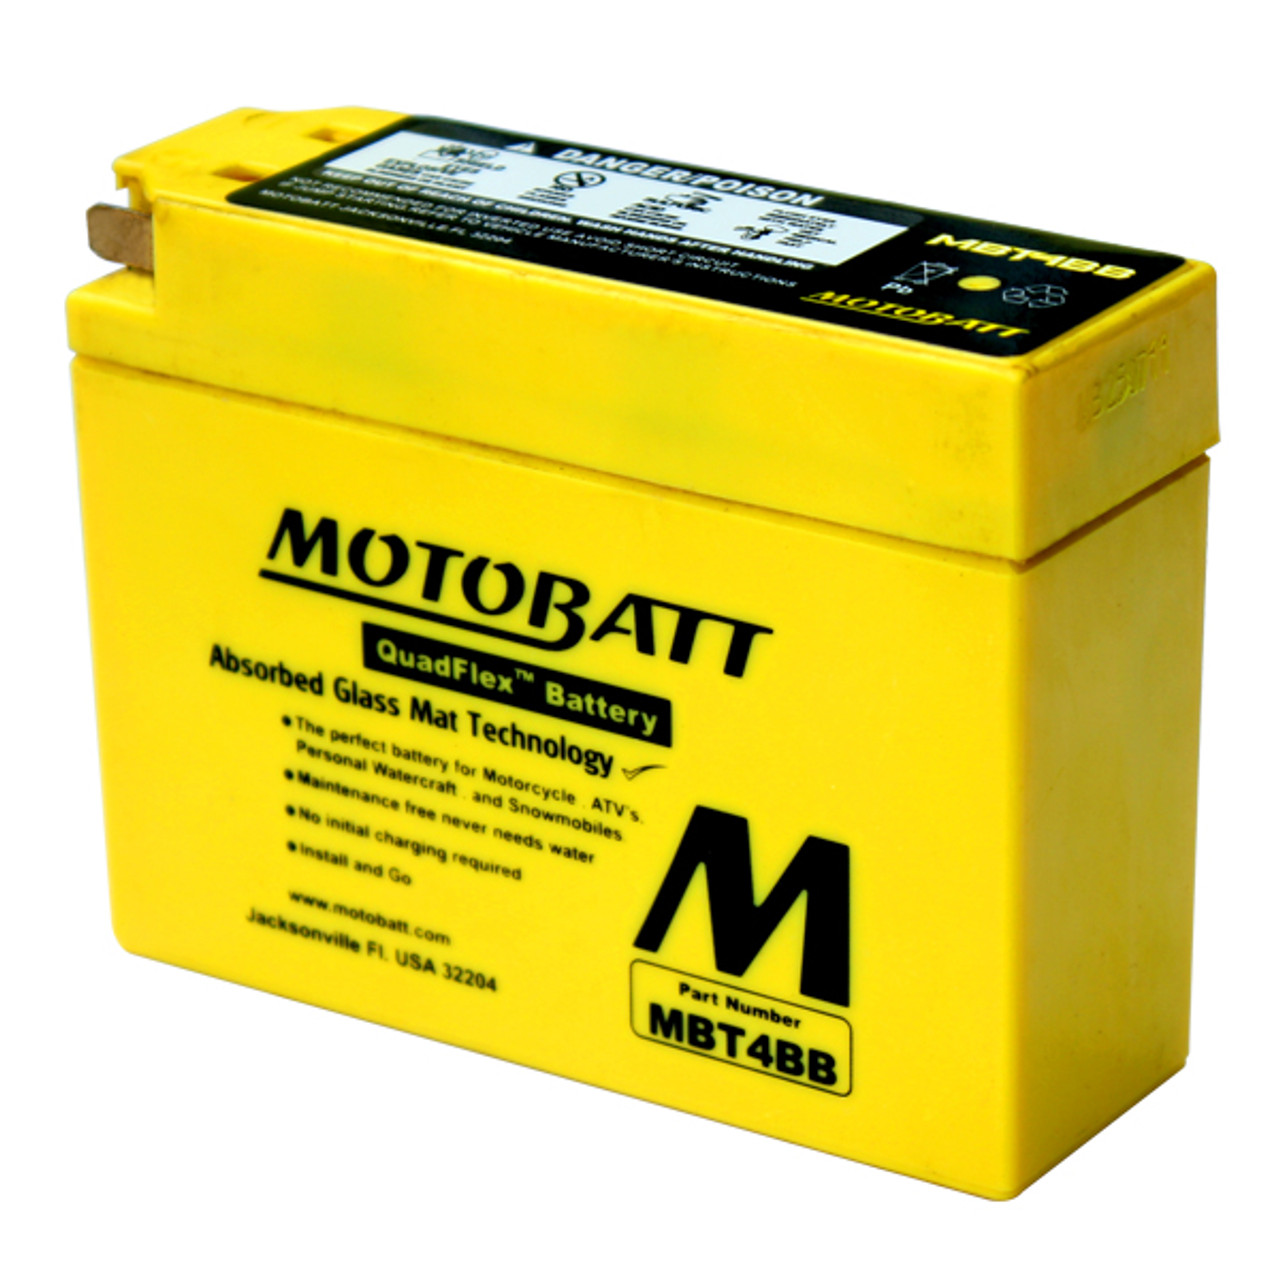 Motobatt MBT4BB Battery - AGM Sealed for Motorcycle - Powersport